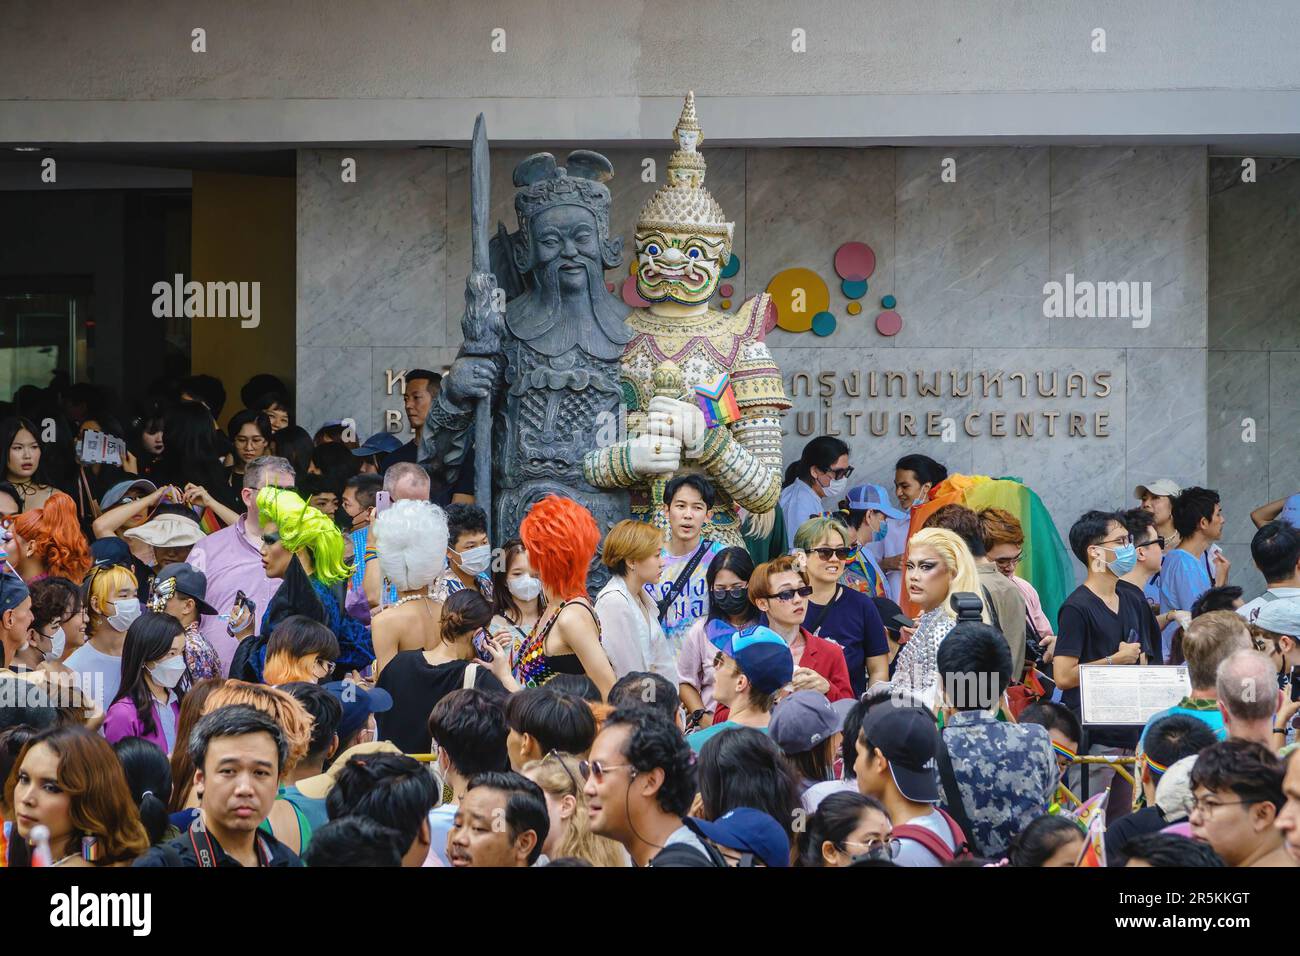 Dos antiguos estatutos asiáticos que simbolizan la protección están siendo rodeados por una multitud masiva que espera la apertura del Desfile del Orgullo de Bangkok 2023, frente al Centro de Arte y Cultura de Bangkok (BACC) en la intersección de Pathumwan, Tailandia. Organizado por la organización sin fines de lucro Naruemit Pride y la Administración Metropolitana de Bangkok, Bangkok PRIDE DESFILE 2023 bajo el tema ìBeyond Genderî Empieza desde el Centro de Arte y Cultura de Bangkok (BACC) en la intersección de Pathumwan con Rama 1 Road. Organizado por la organización sin fines de lucro Naruemit Pride y la Administración Metropolitana de Bangkok, desfile del orgullo de Bangkok Foto de stock